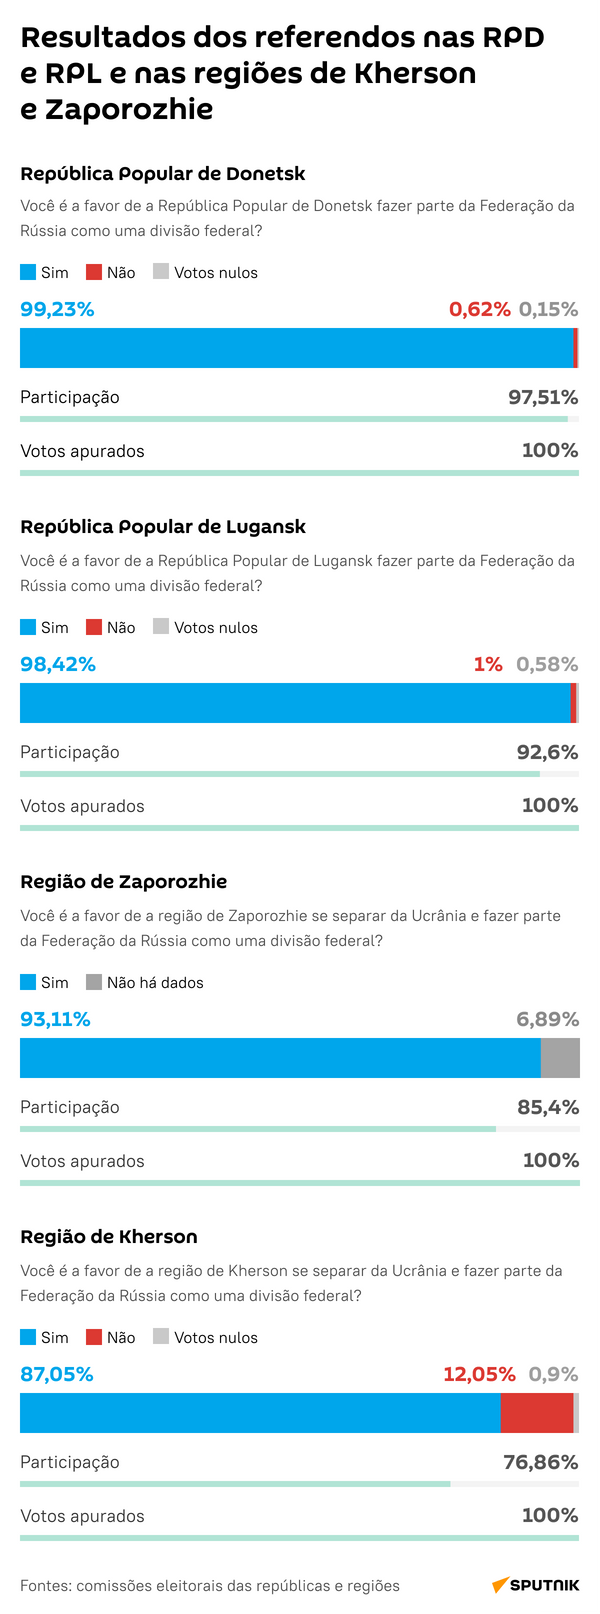 Resultados dos referendos nos territórios libertados - Sputnik Brasil